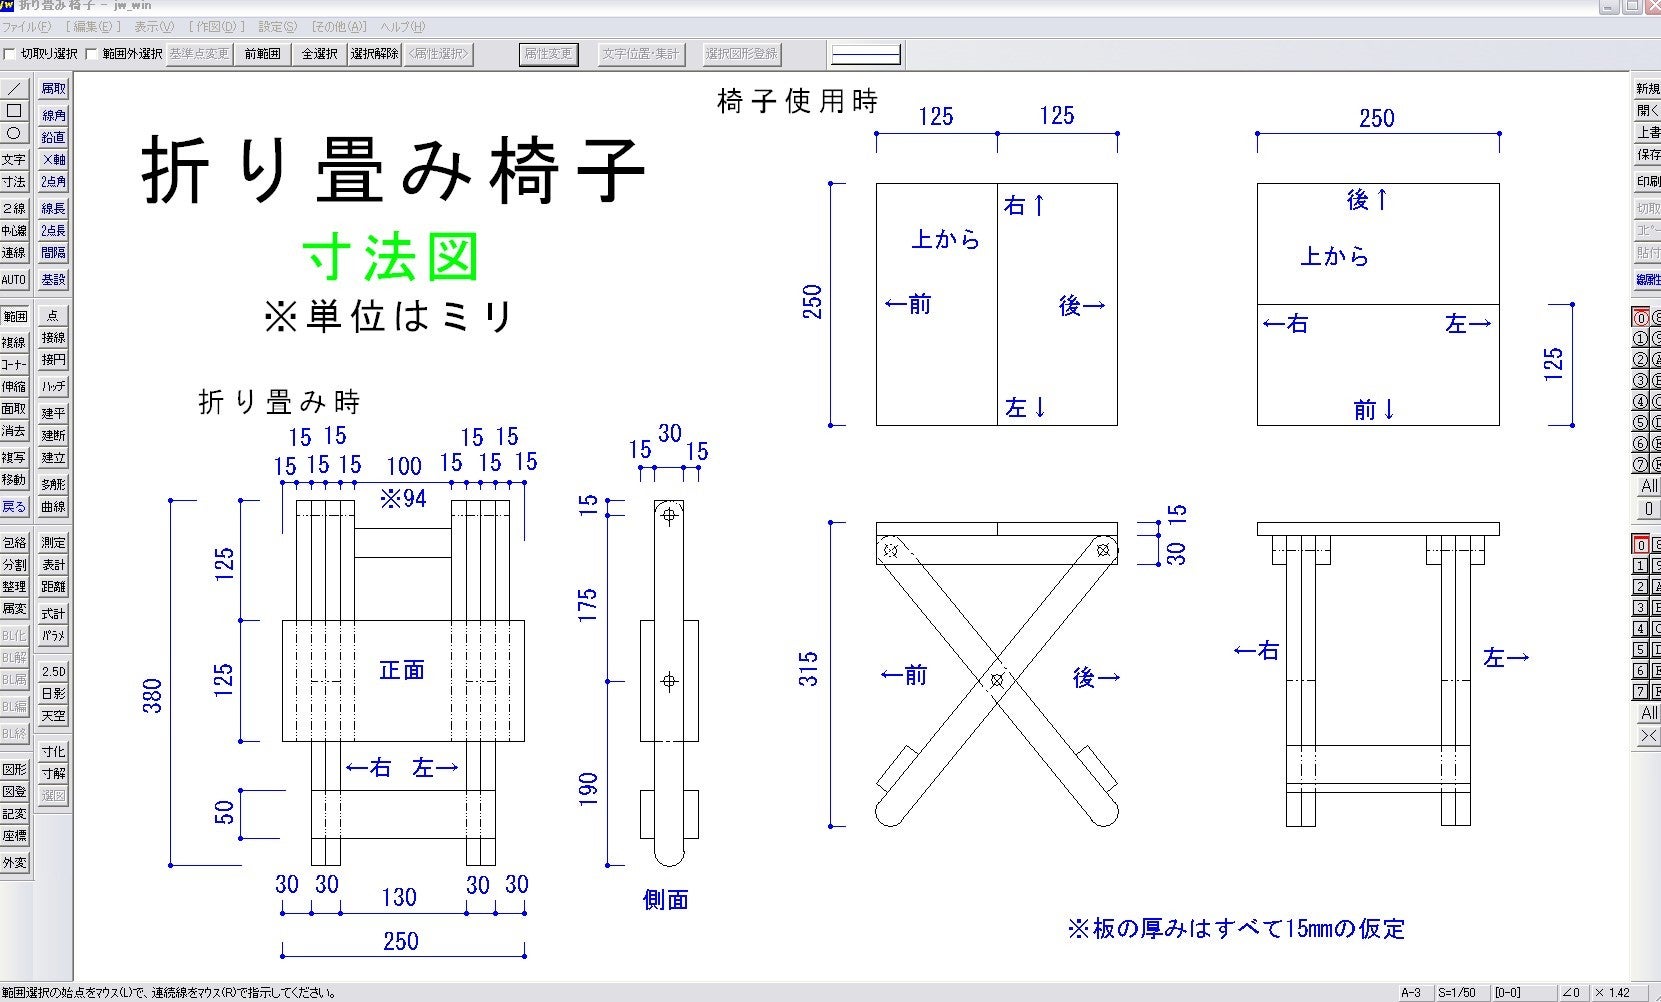 のヒープ 五十 トーナメント 木工 折りたたみ 椅子 設計 図 bixi.jp